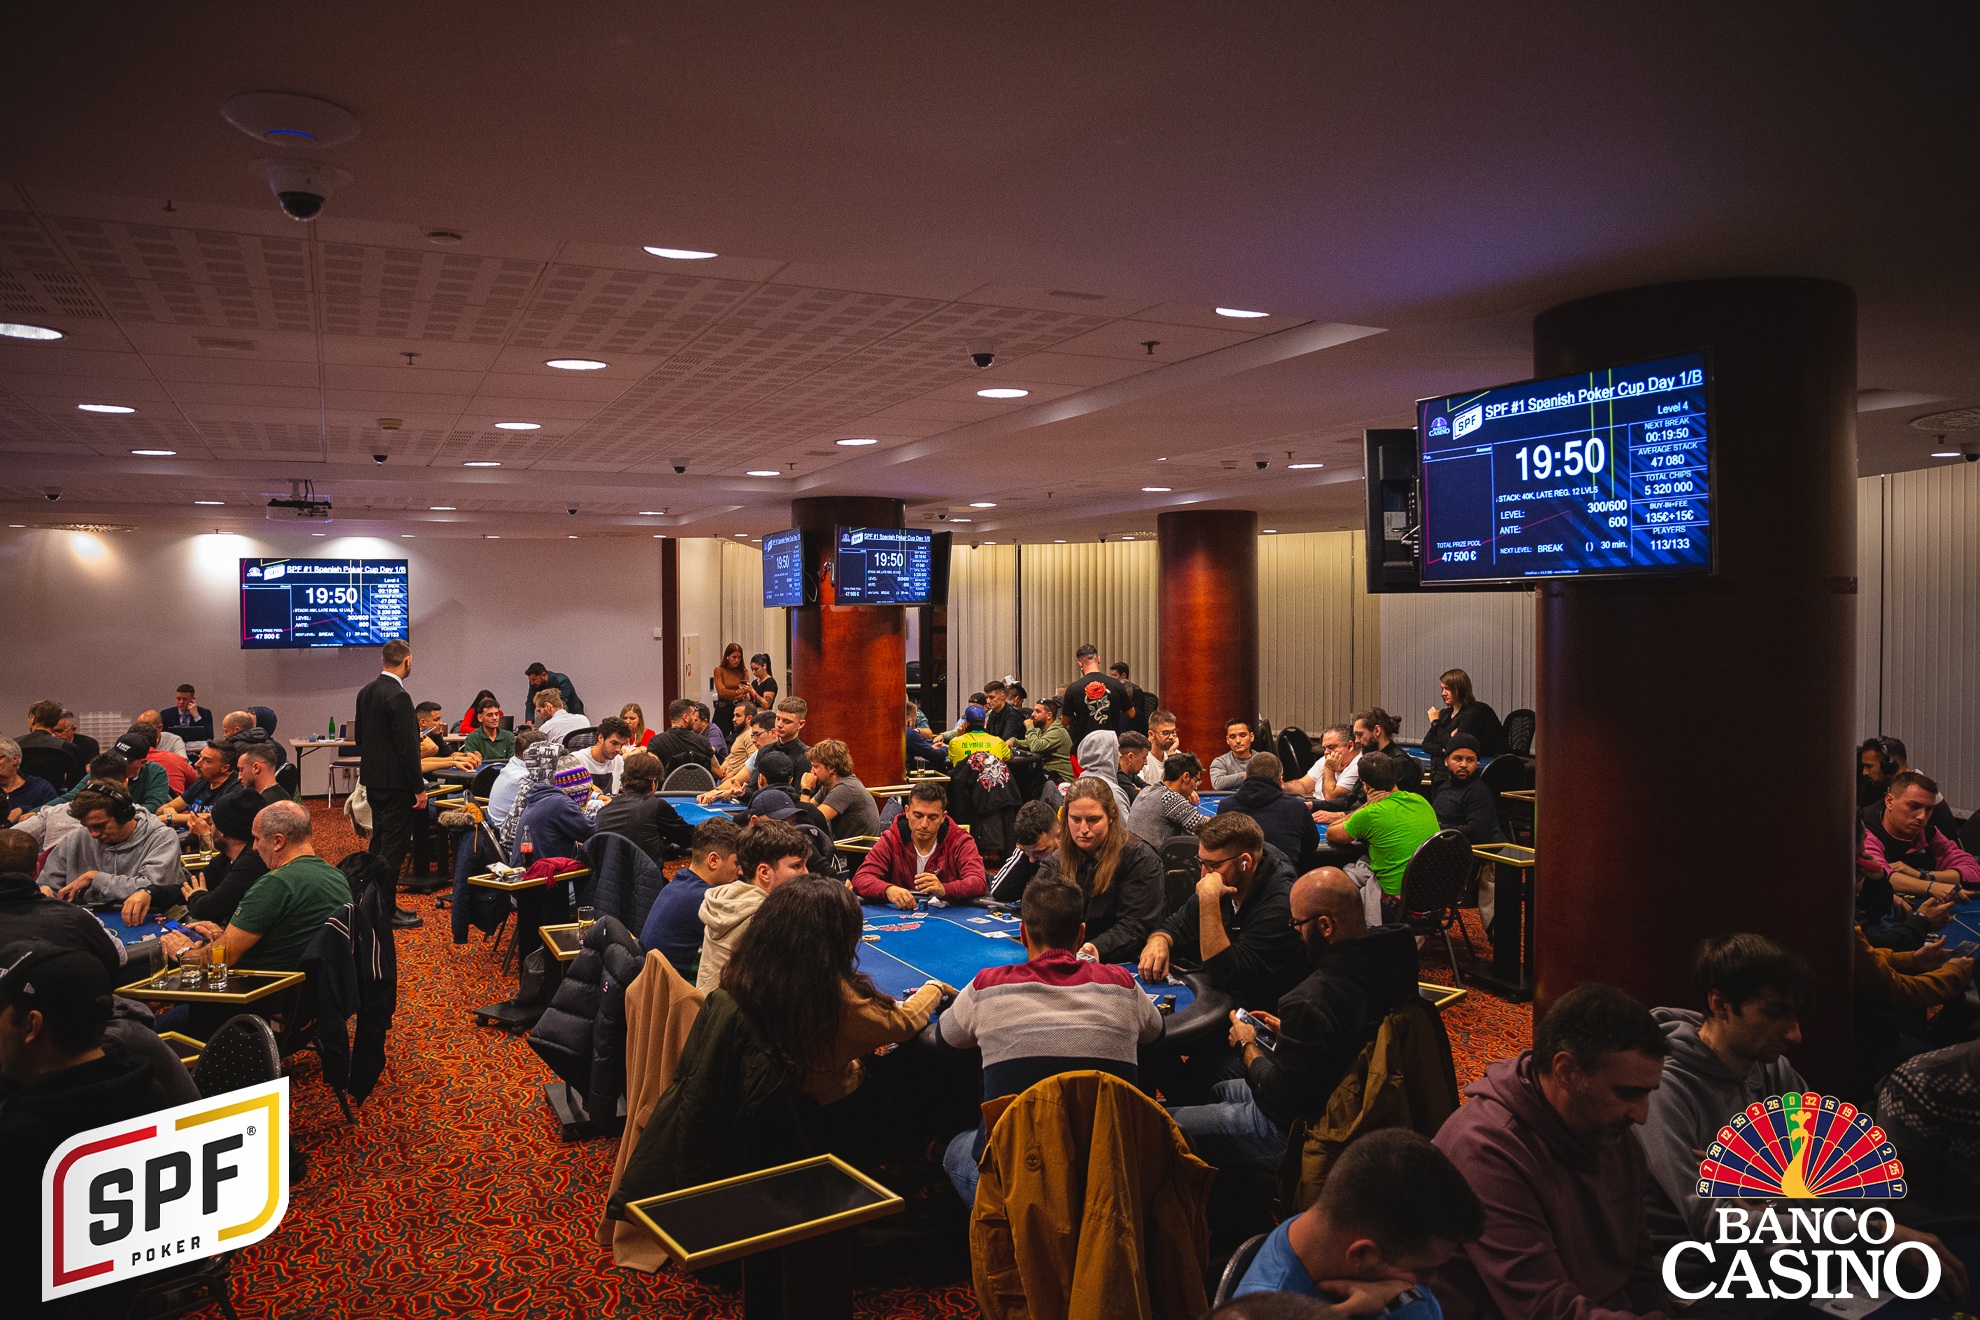 Spanish Poker Cup € 50.000 GTD geht ins Finale,  das SPF Main Event mit € 300.000 GTD beginnt heute mit dem Eröffnungstag!